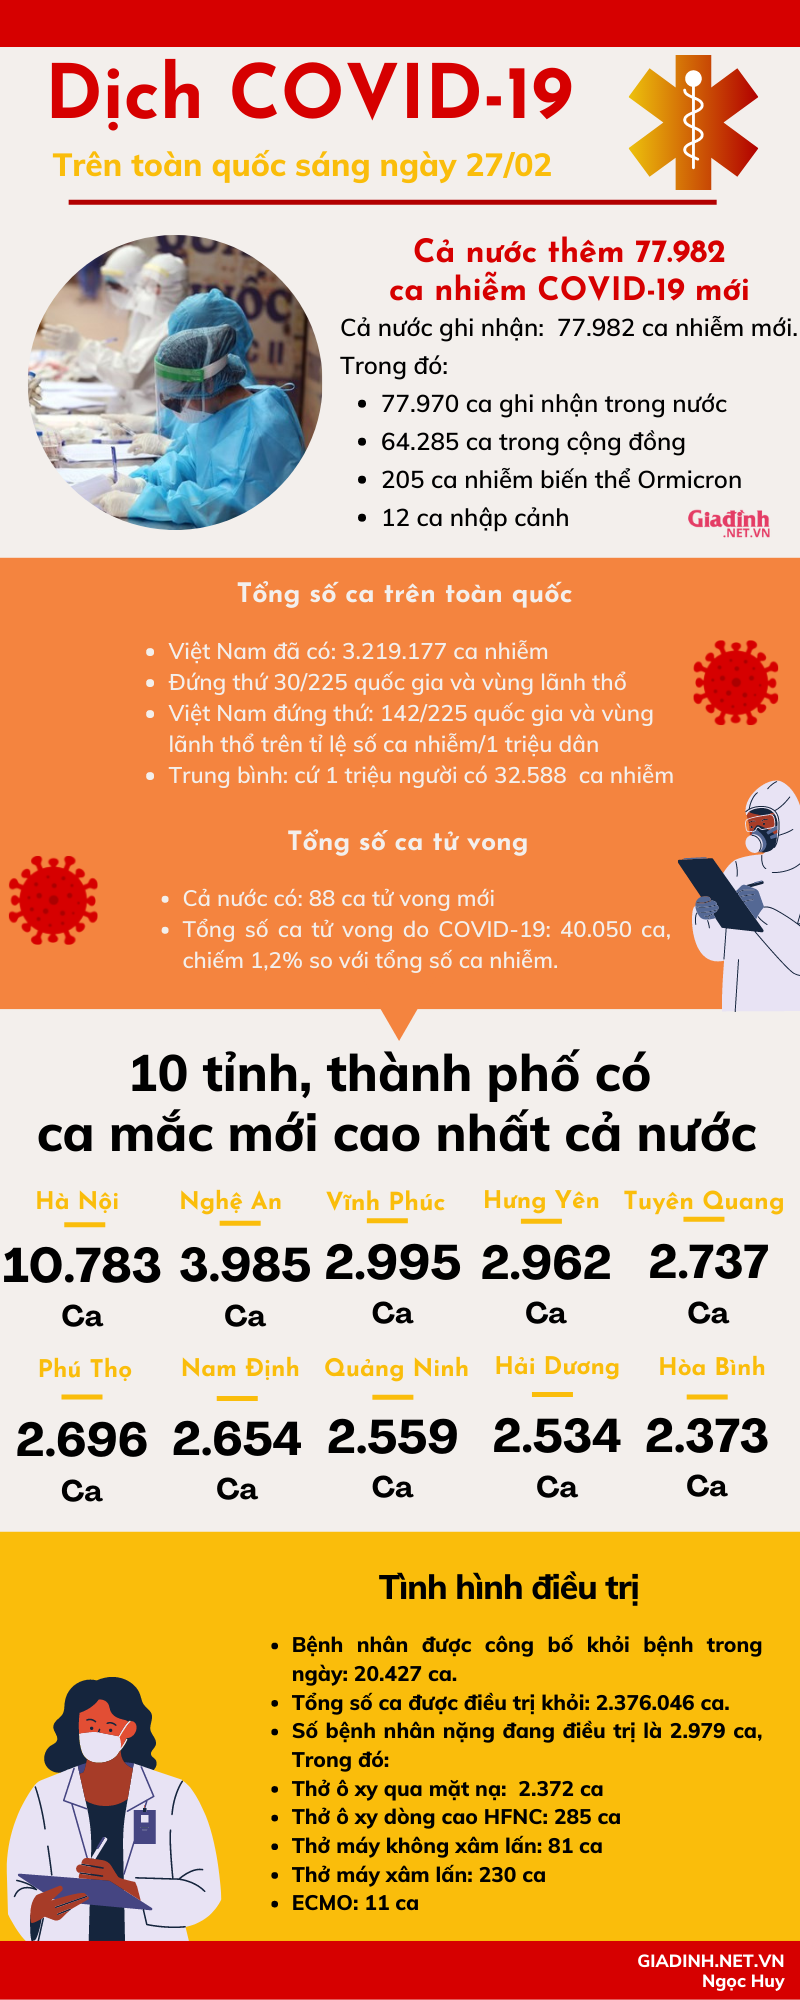 Sáng 27/02: Số ca nhiễm COVID-19 trên cả nước tiếp tục tăng cao, Hà Nội có 10.783 ca mắc mới - Ảnh 1.